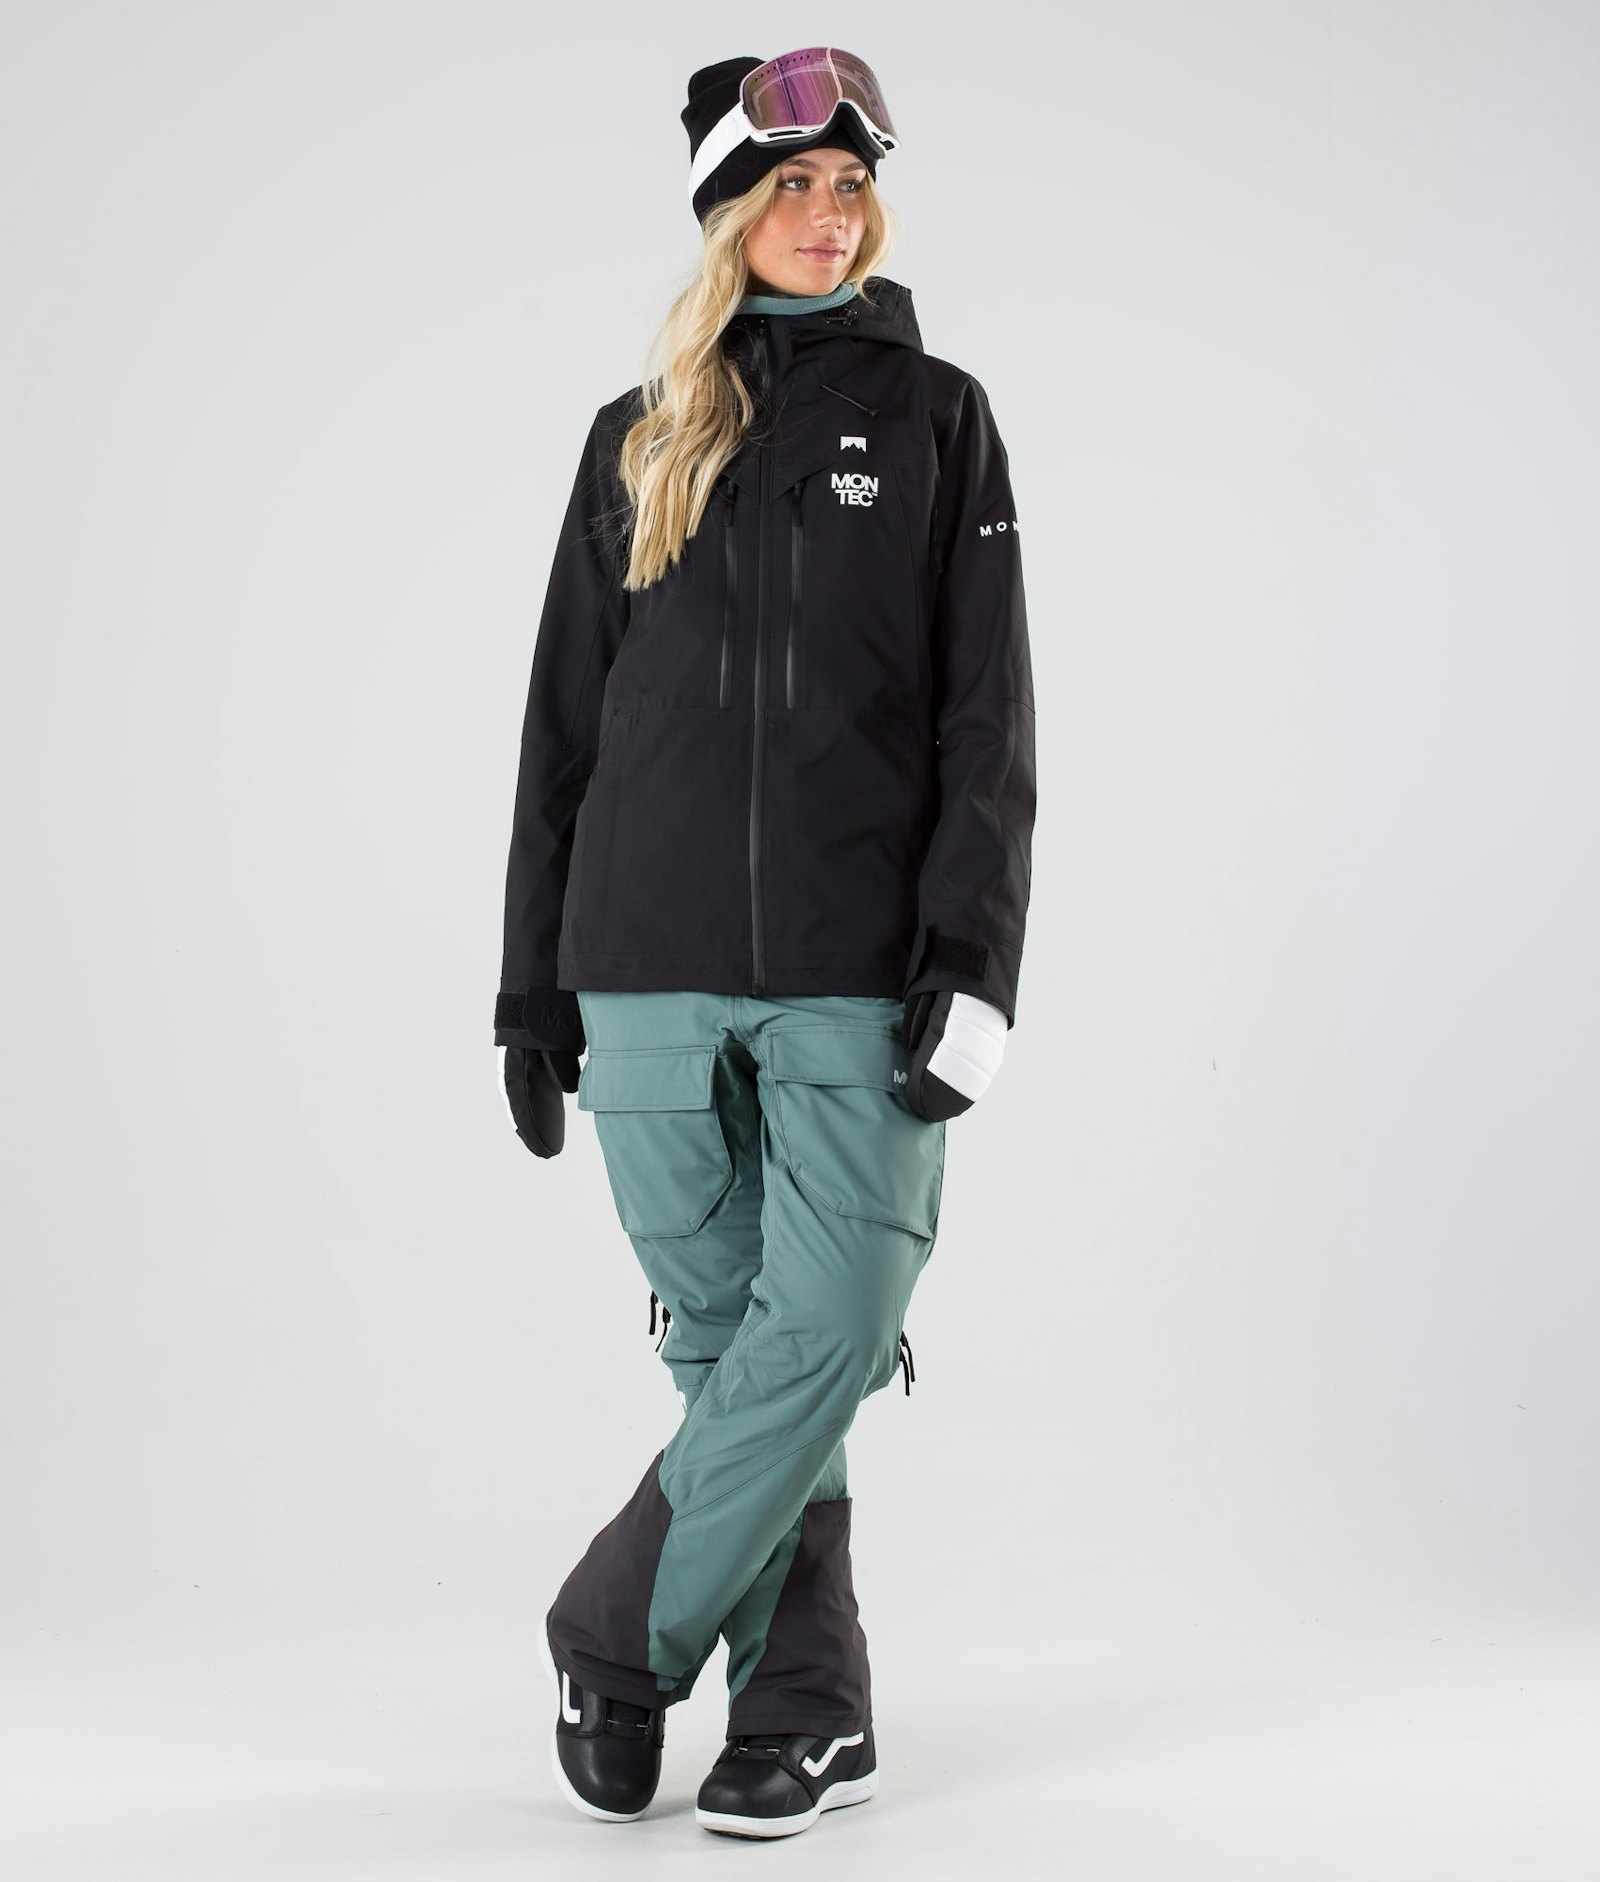 Moss W 2019 Snowboardjacke Damen Black